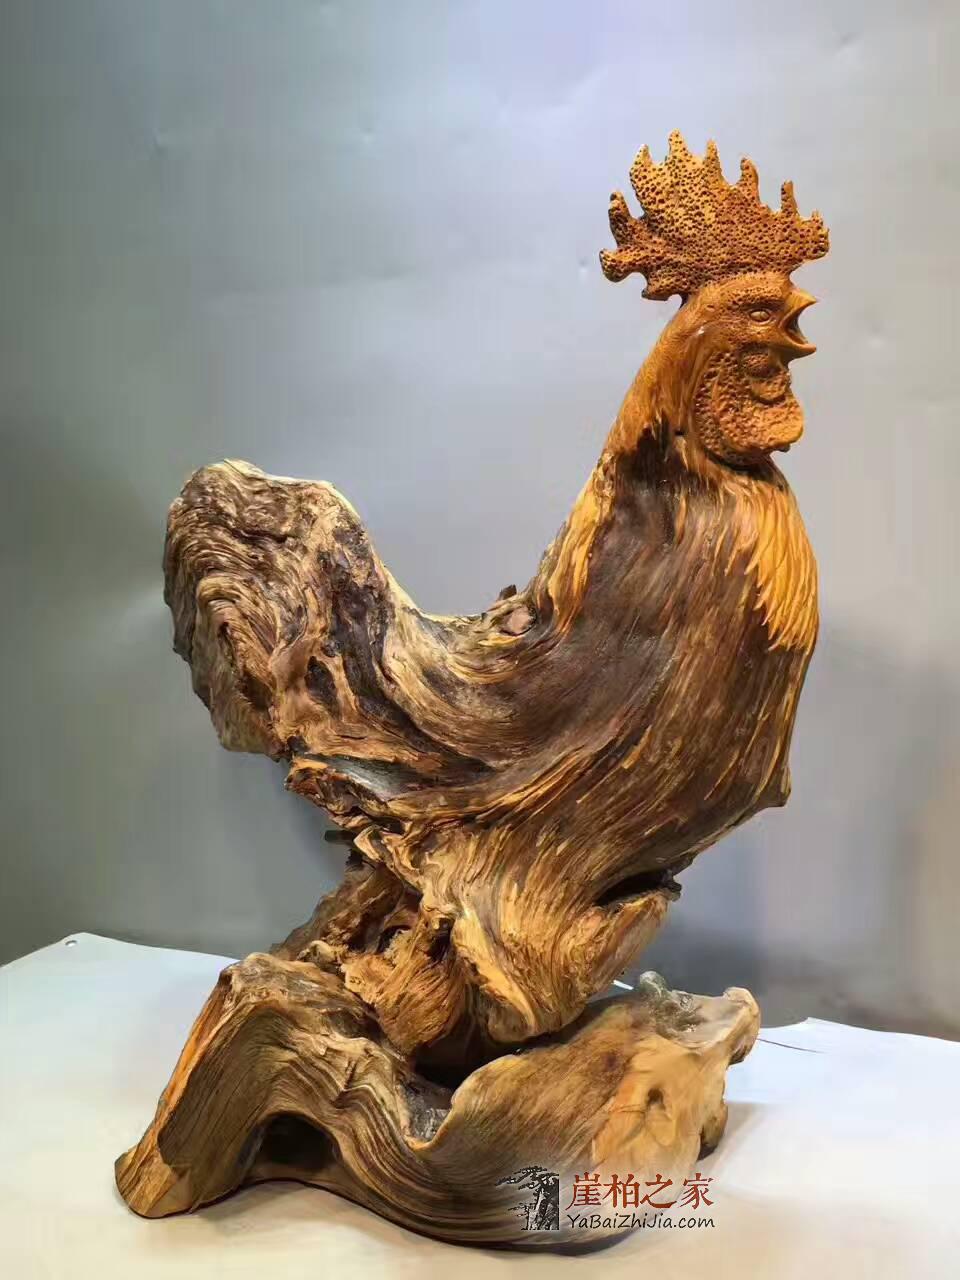 崖柏根雕《大公鸡》造型生动形象 创意礼品摆件-1